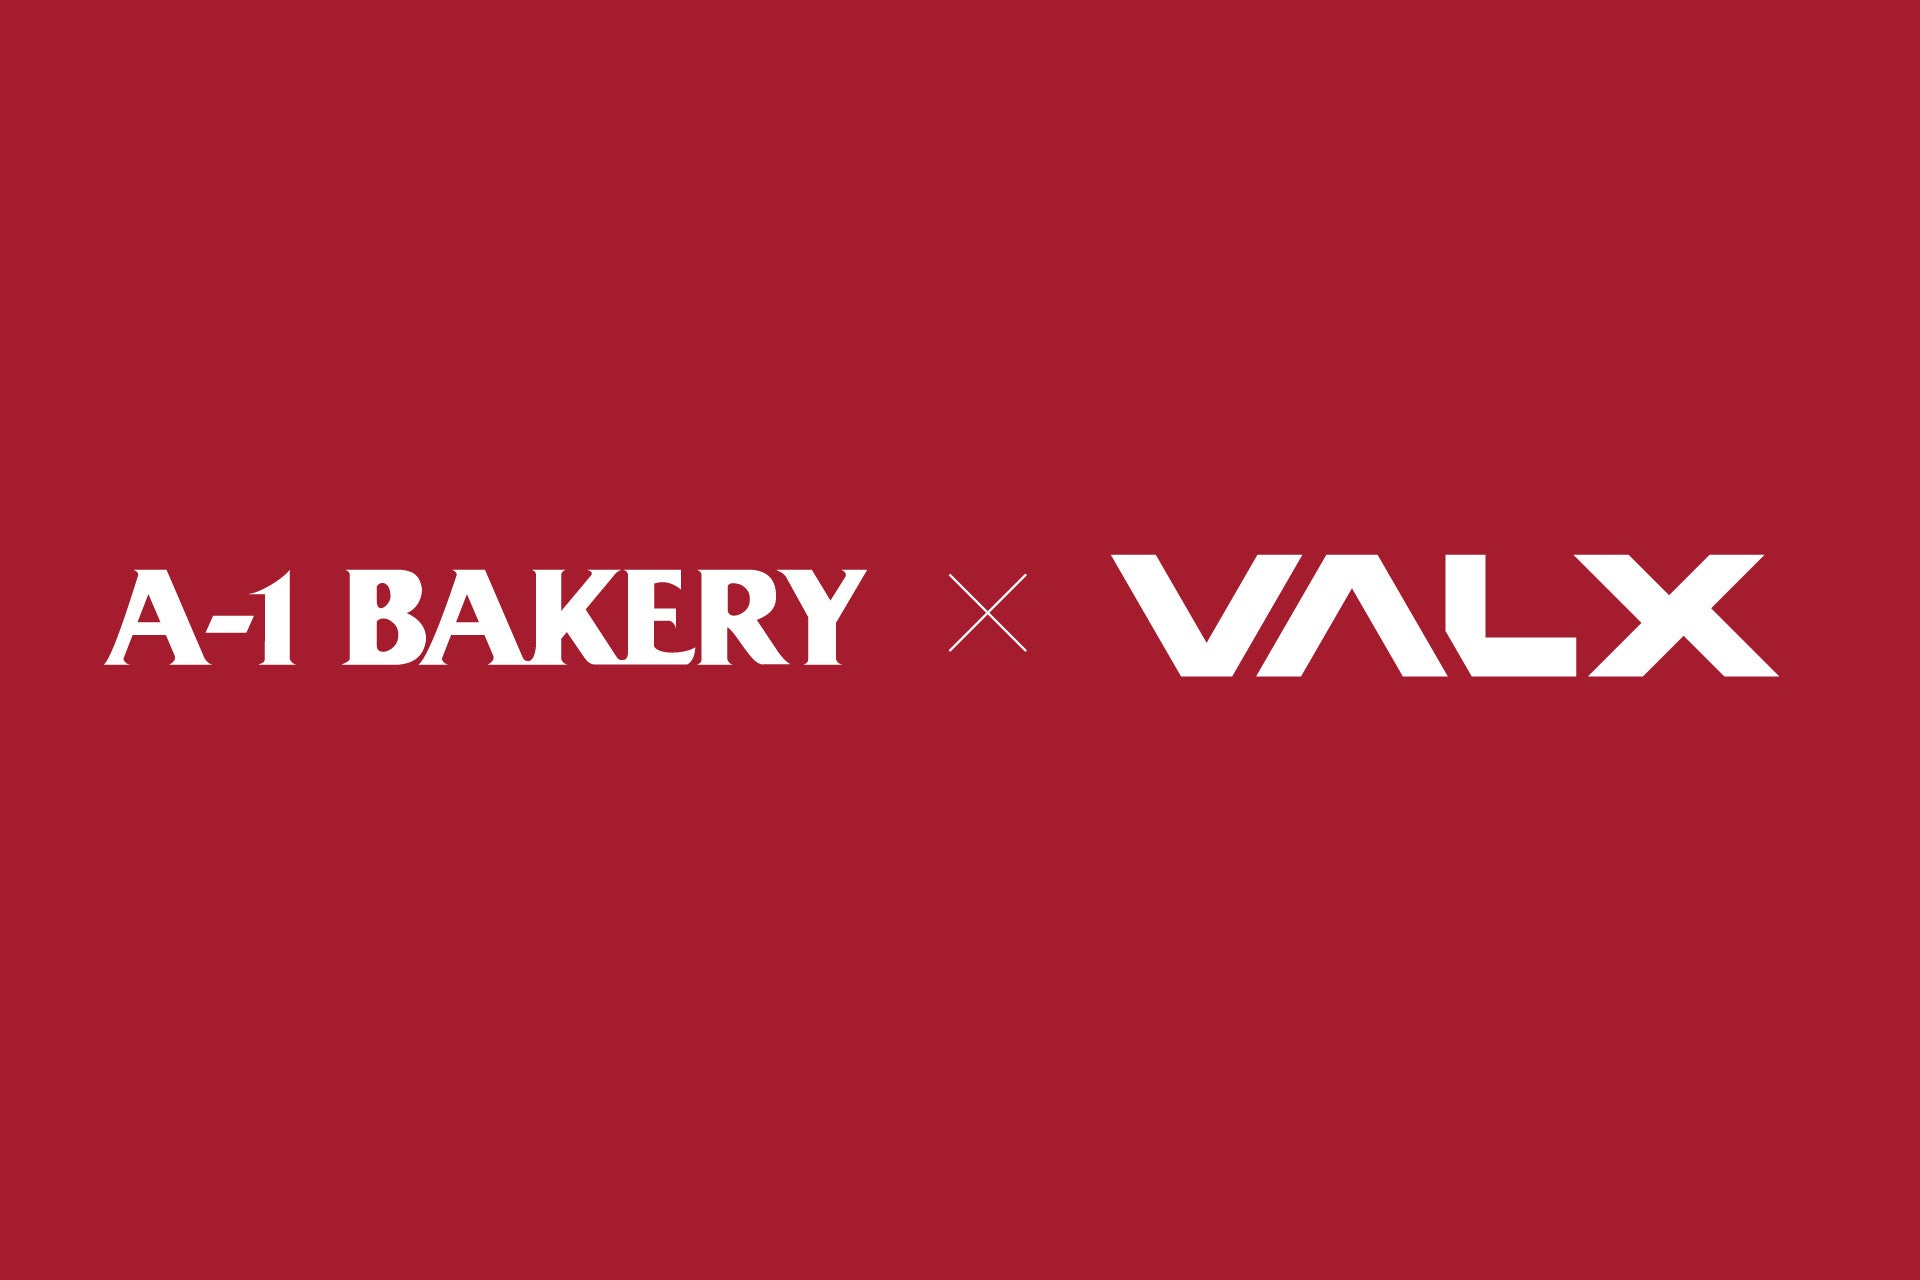 香港を中心に100店舗以上を展開しているA-1 BAKERYにて、持ち運びに便利な「VALX プロテインドリンク」の取り扱いを開始